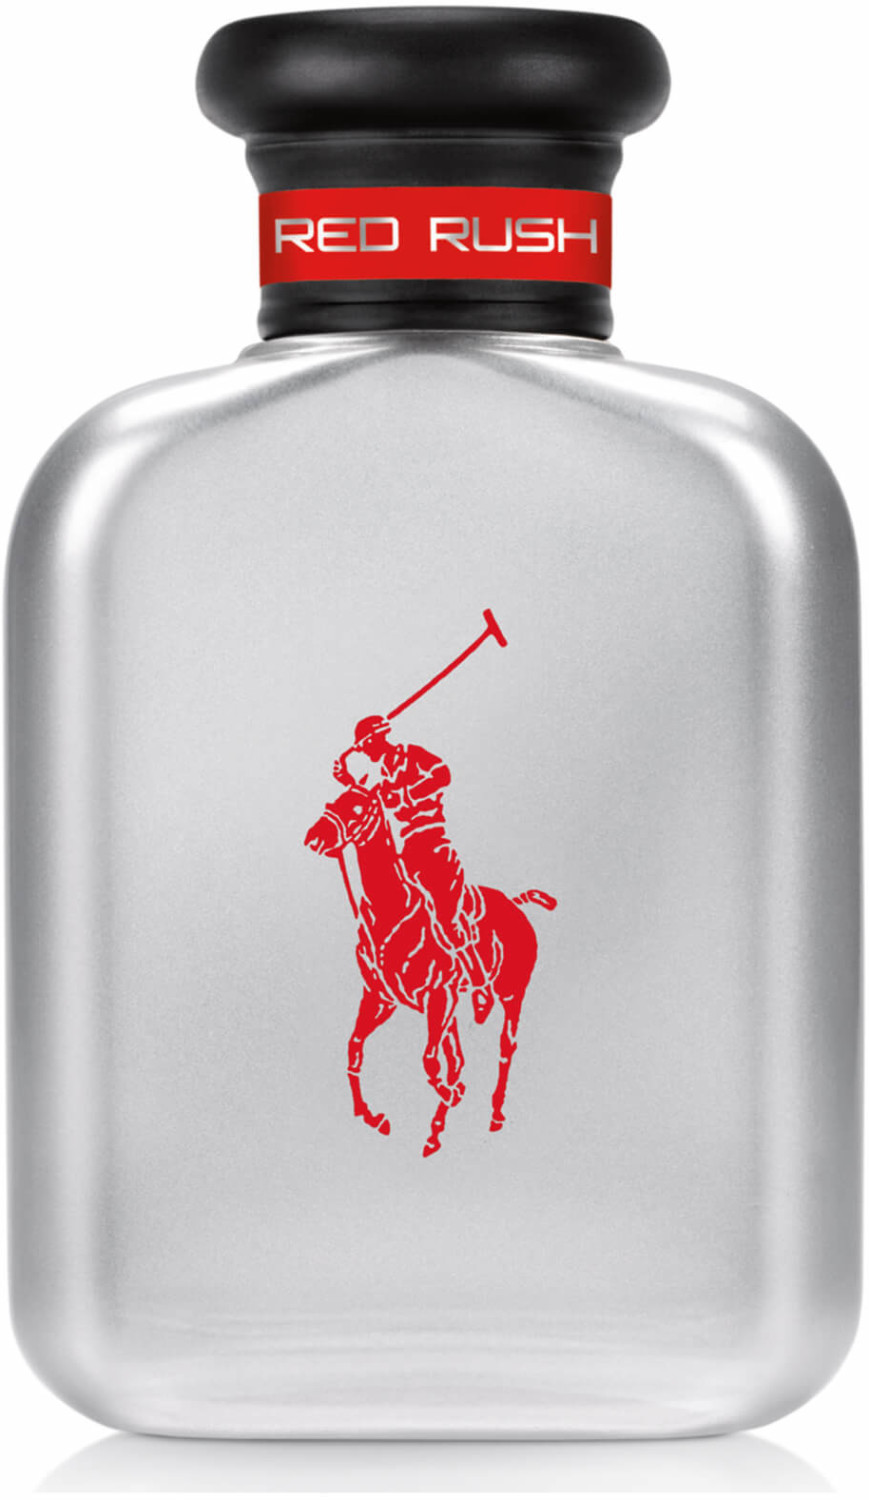 Photos - Men's Fragrance Ralph Lauren Polo Red Rush Eau de Toilette  (200ml)